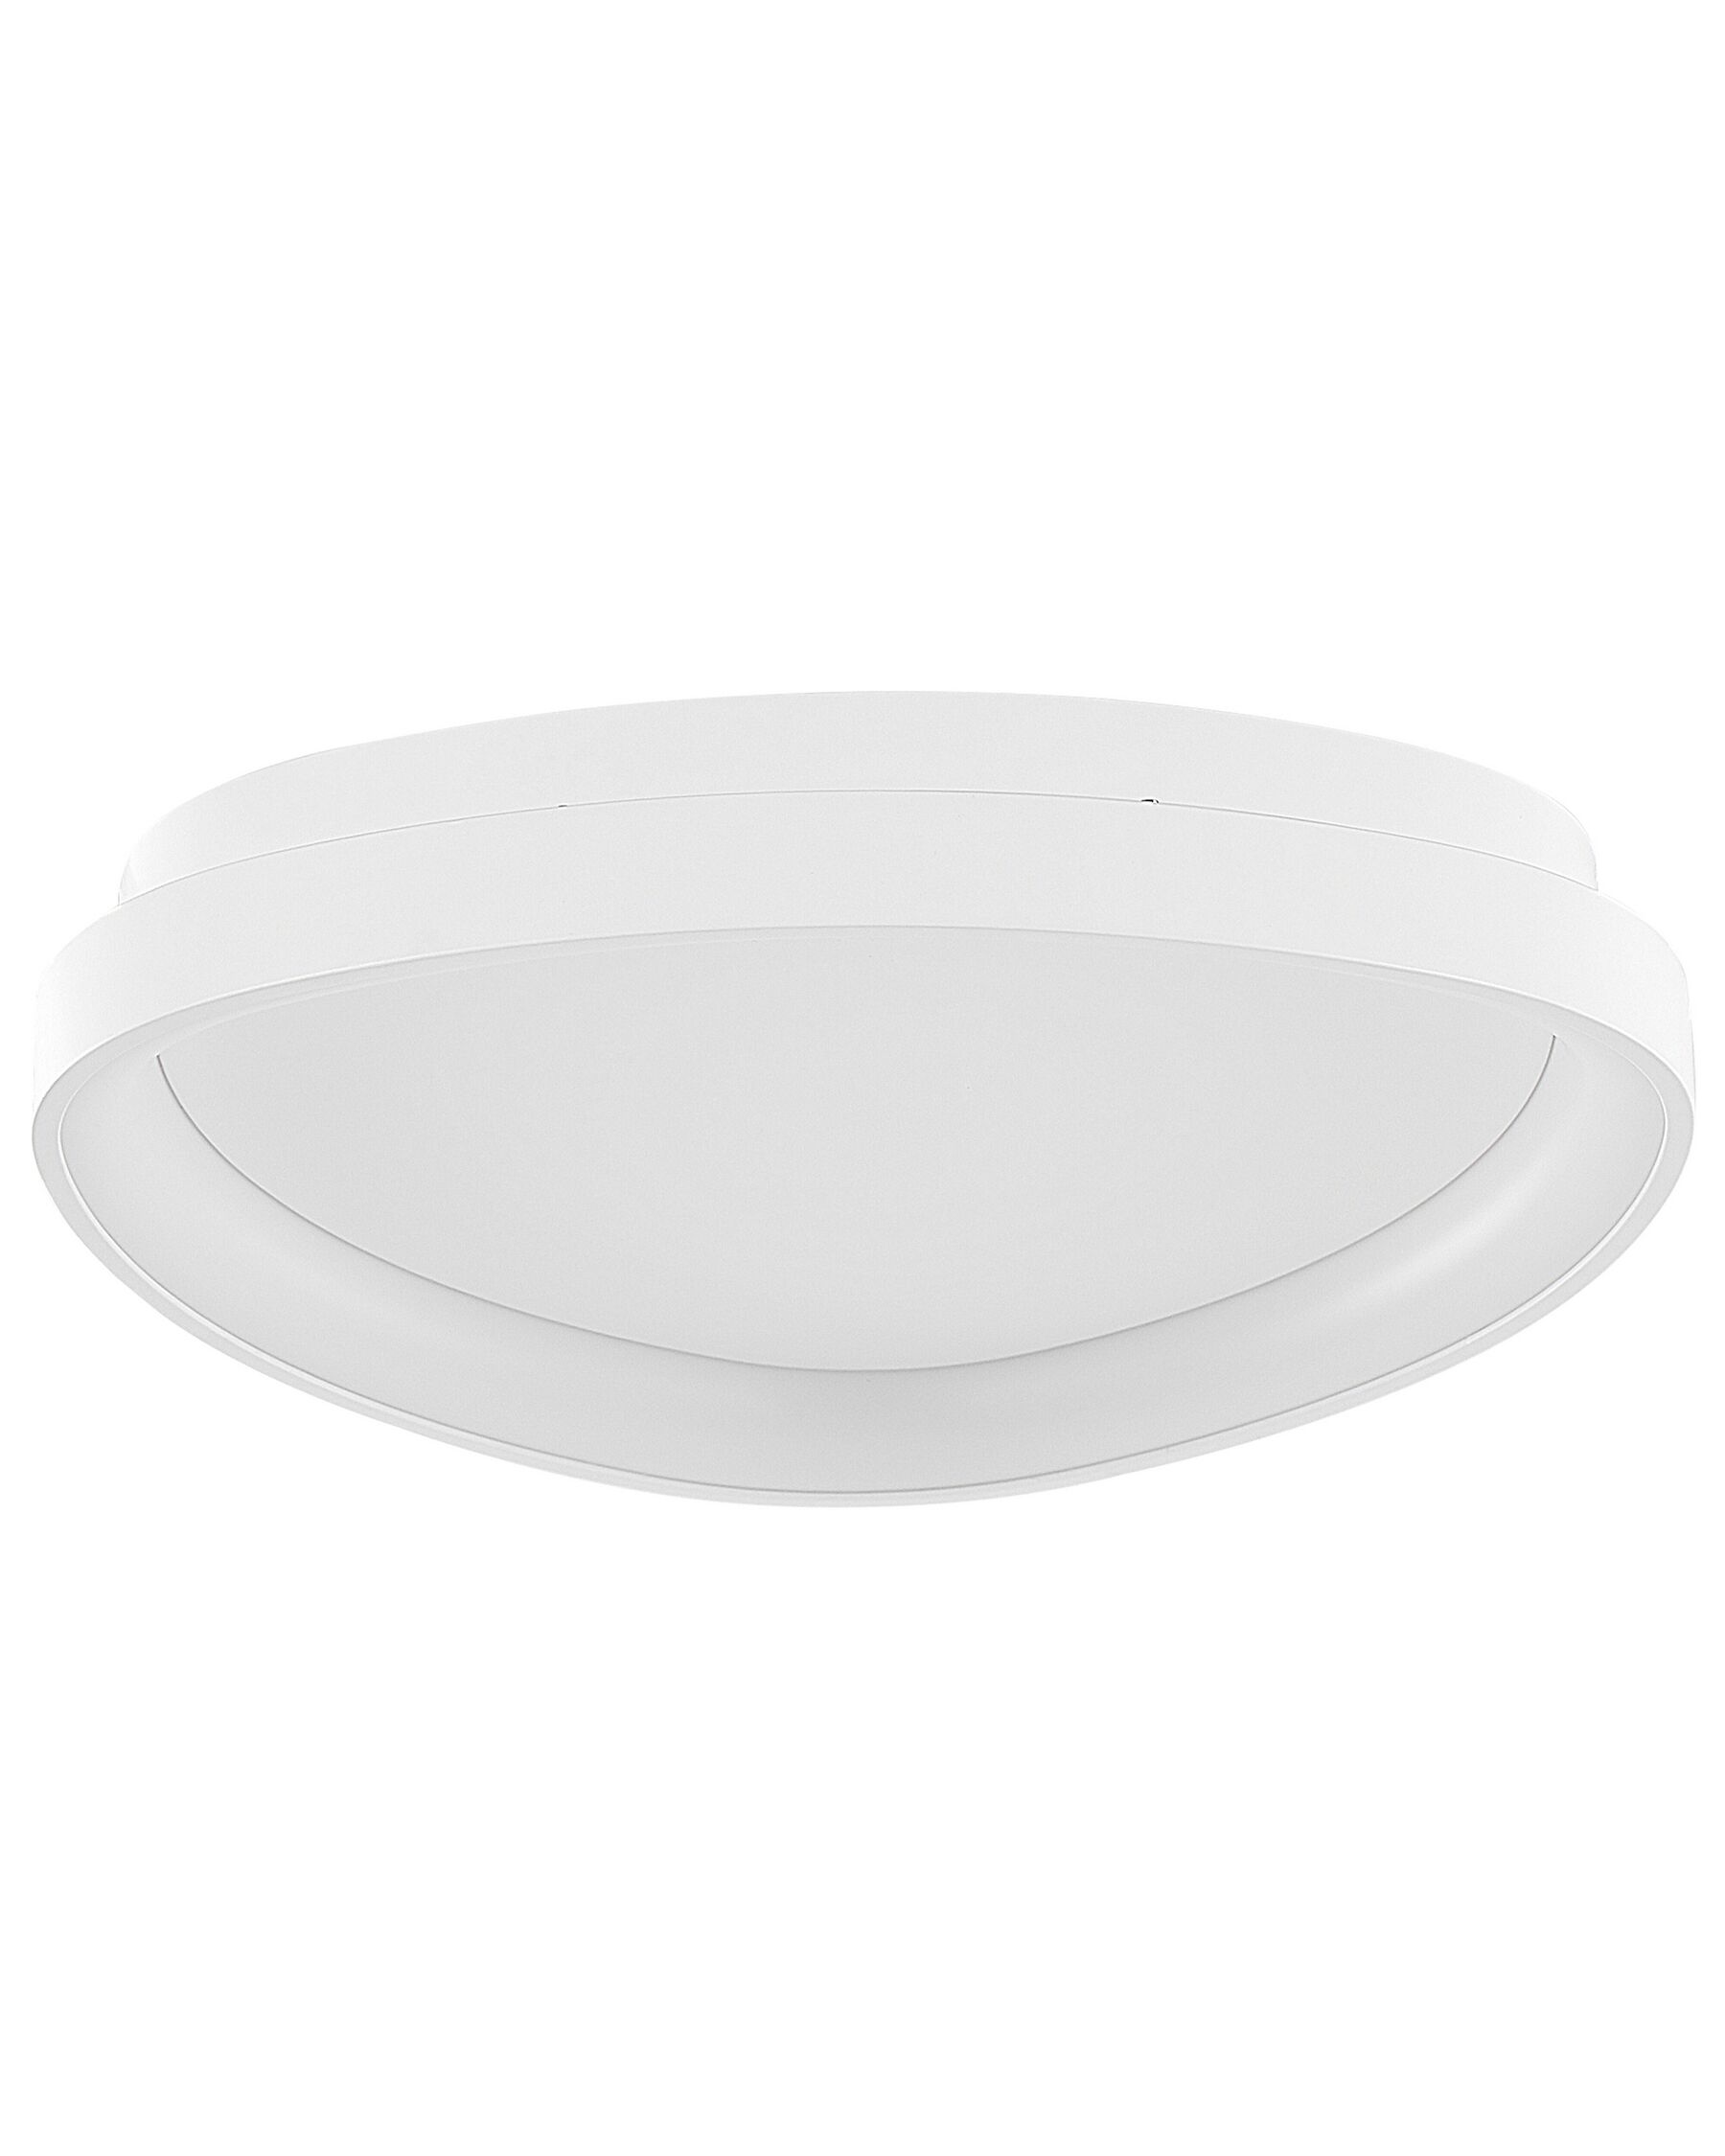 Metal LED Ceiling Lamp White NANDING_824618